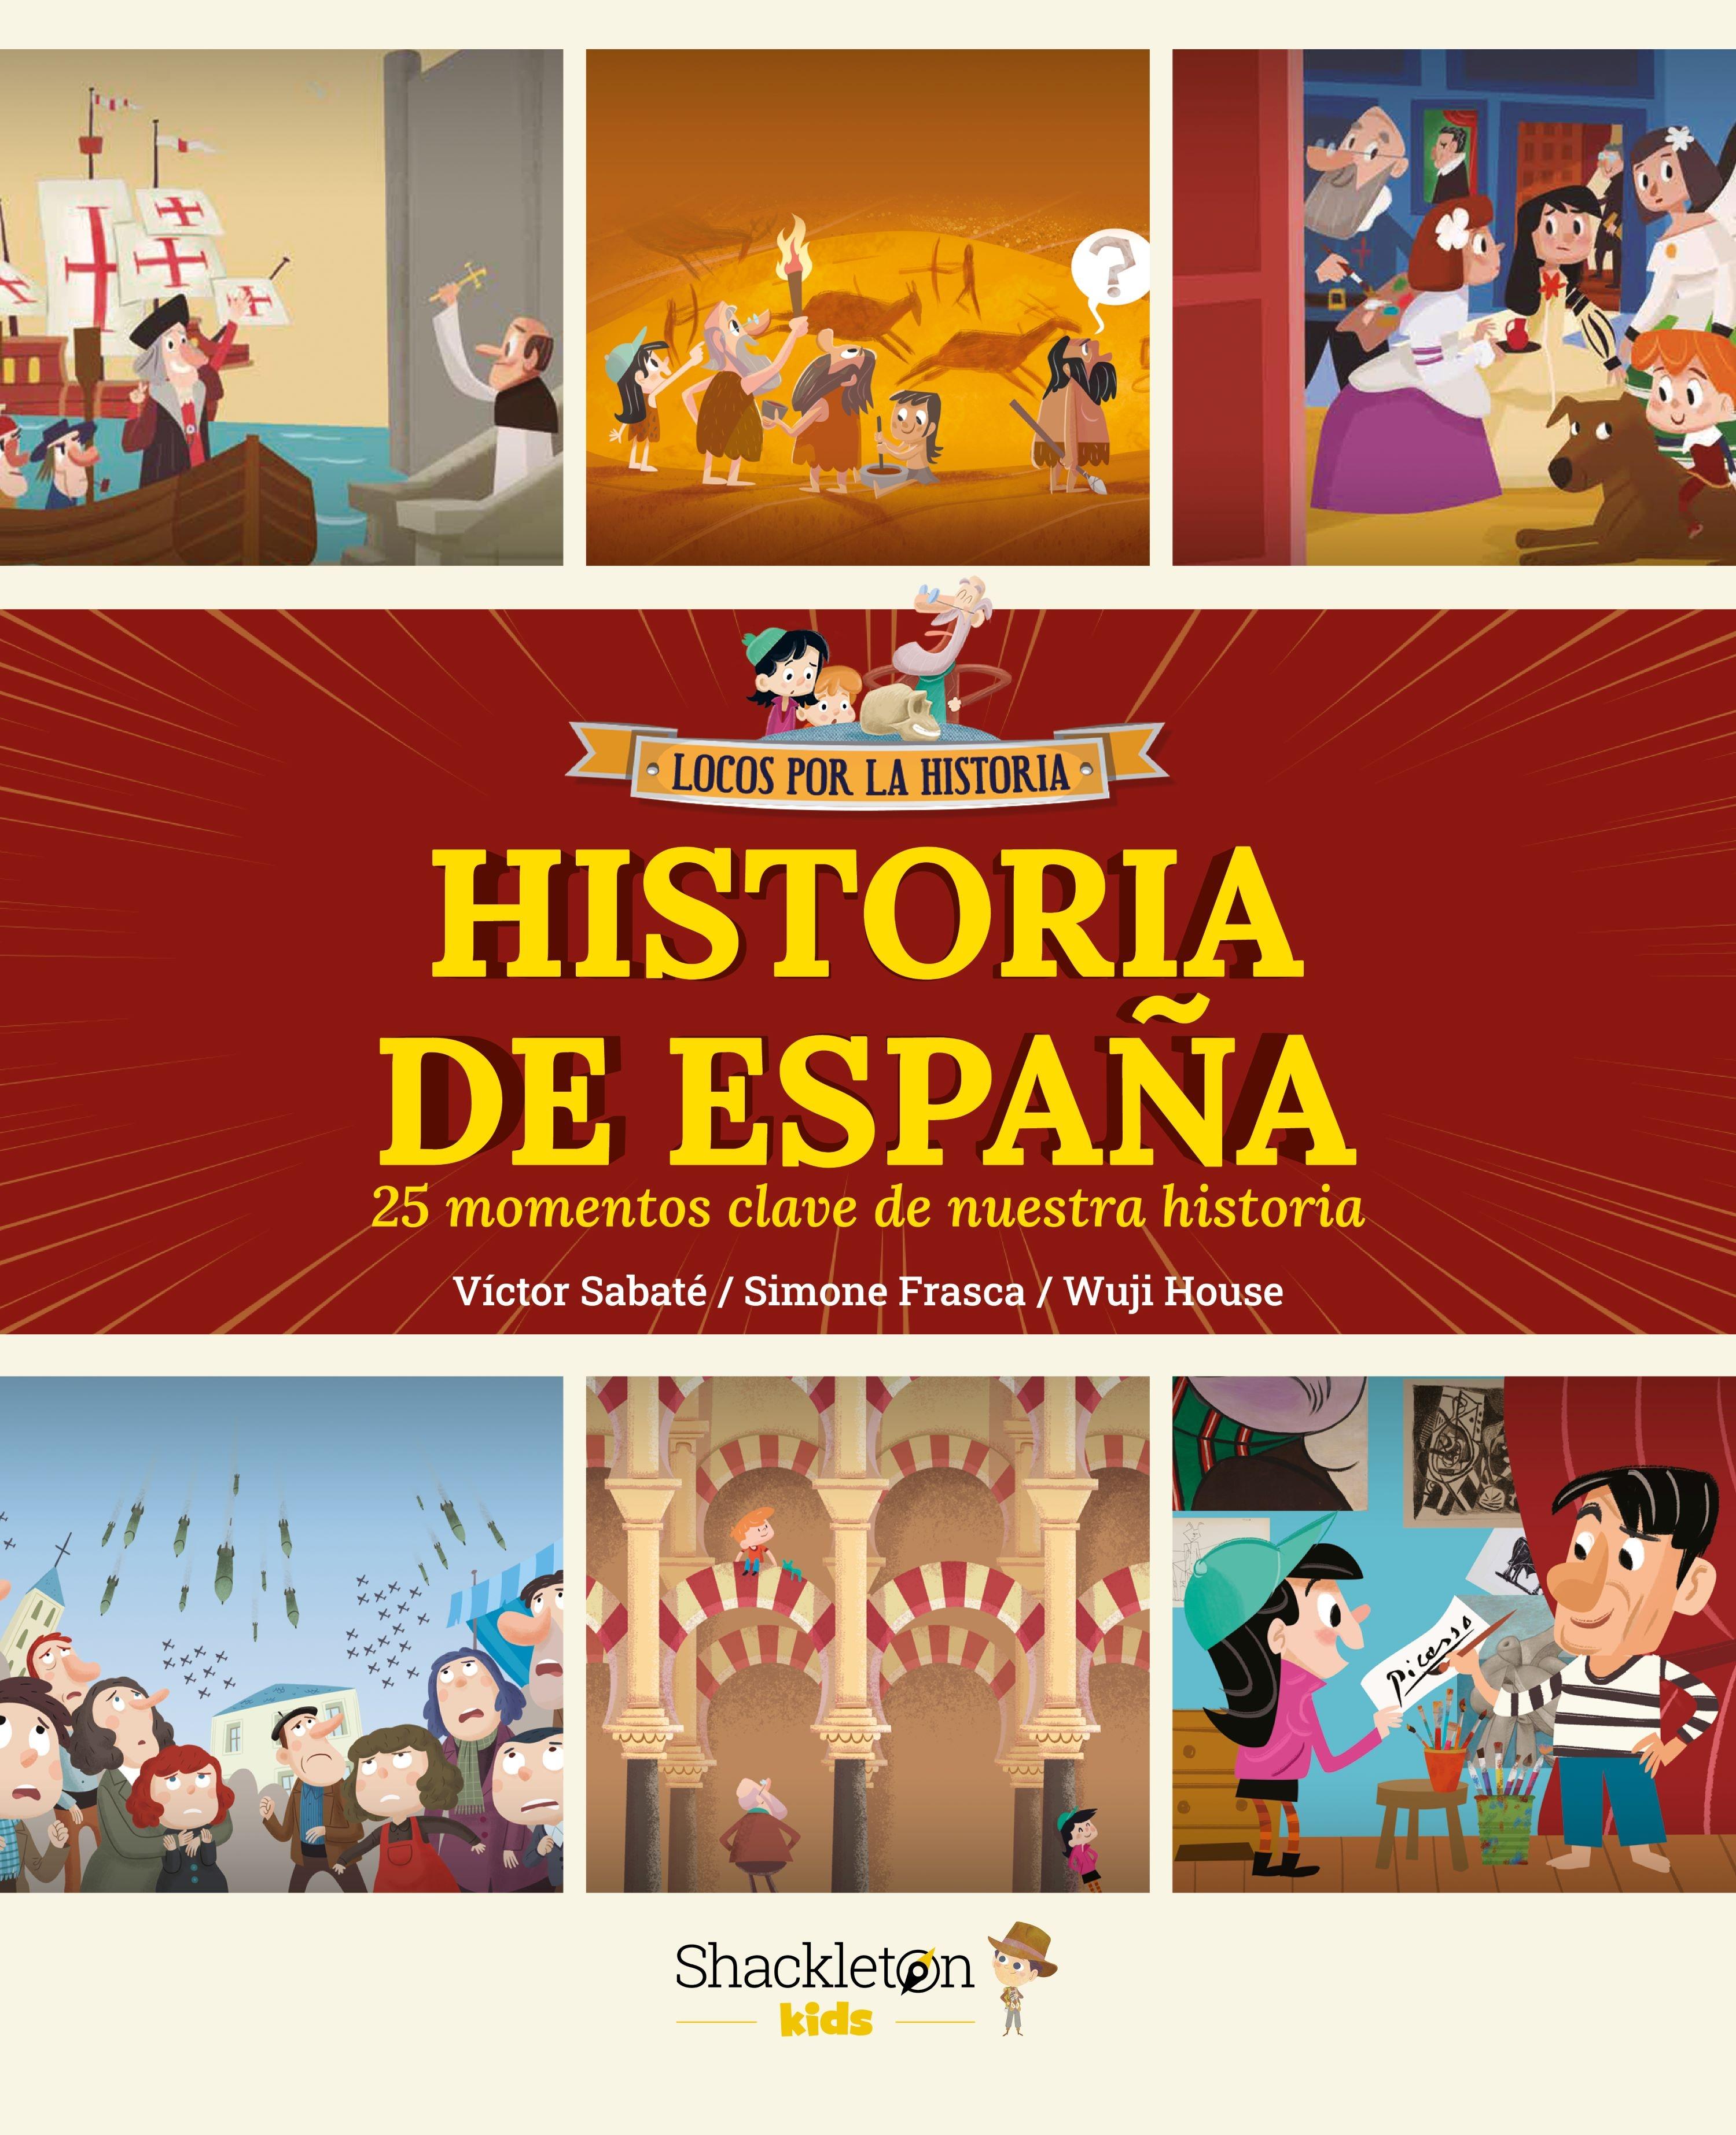 Historia de España "25 Momentos Clave de nuestra Historia"